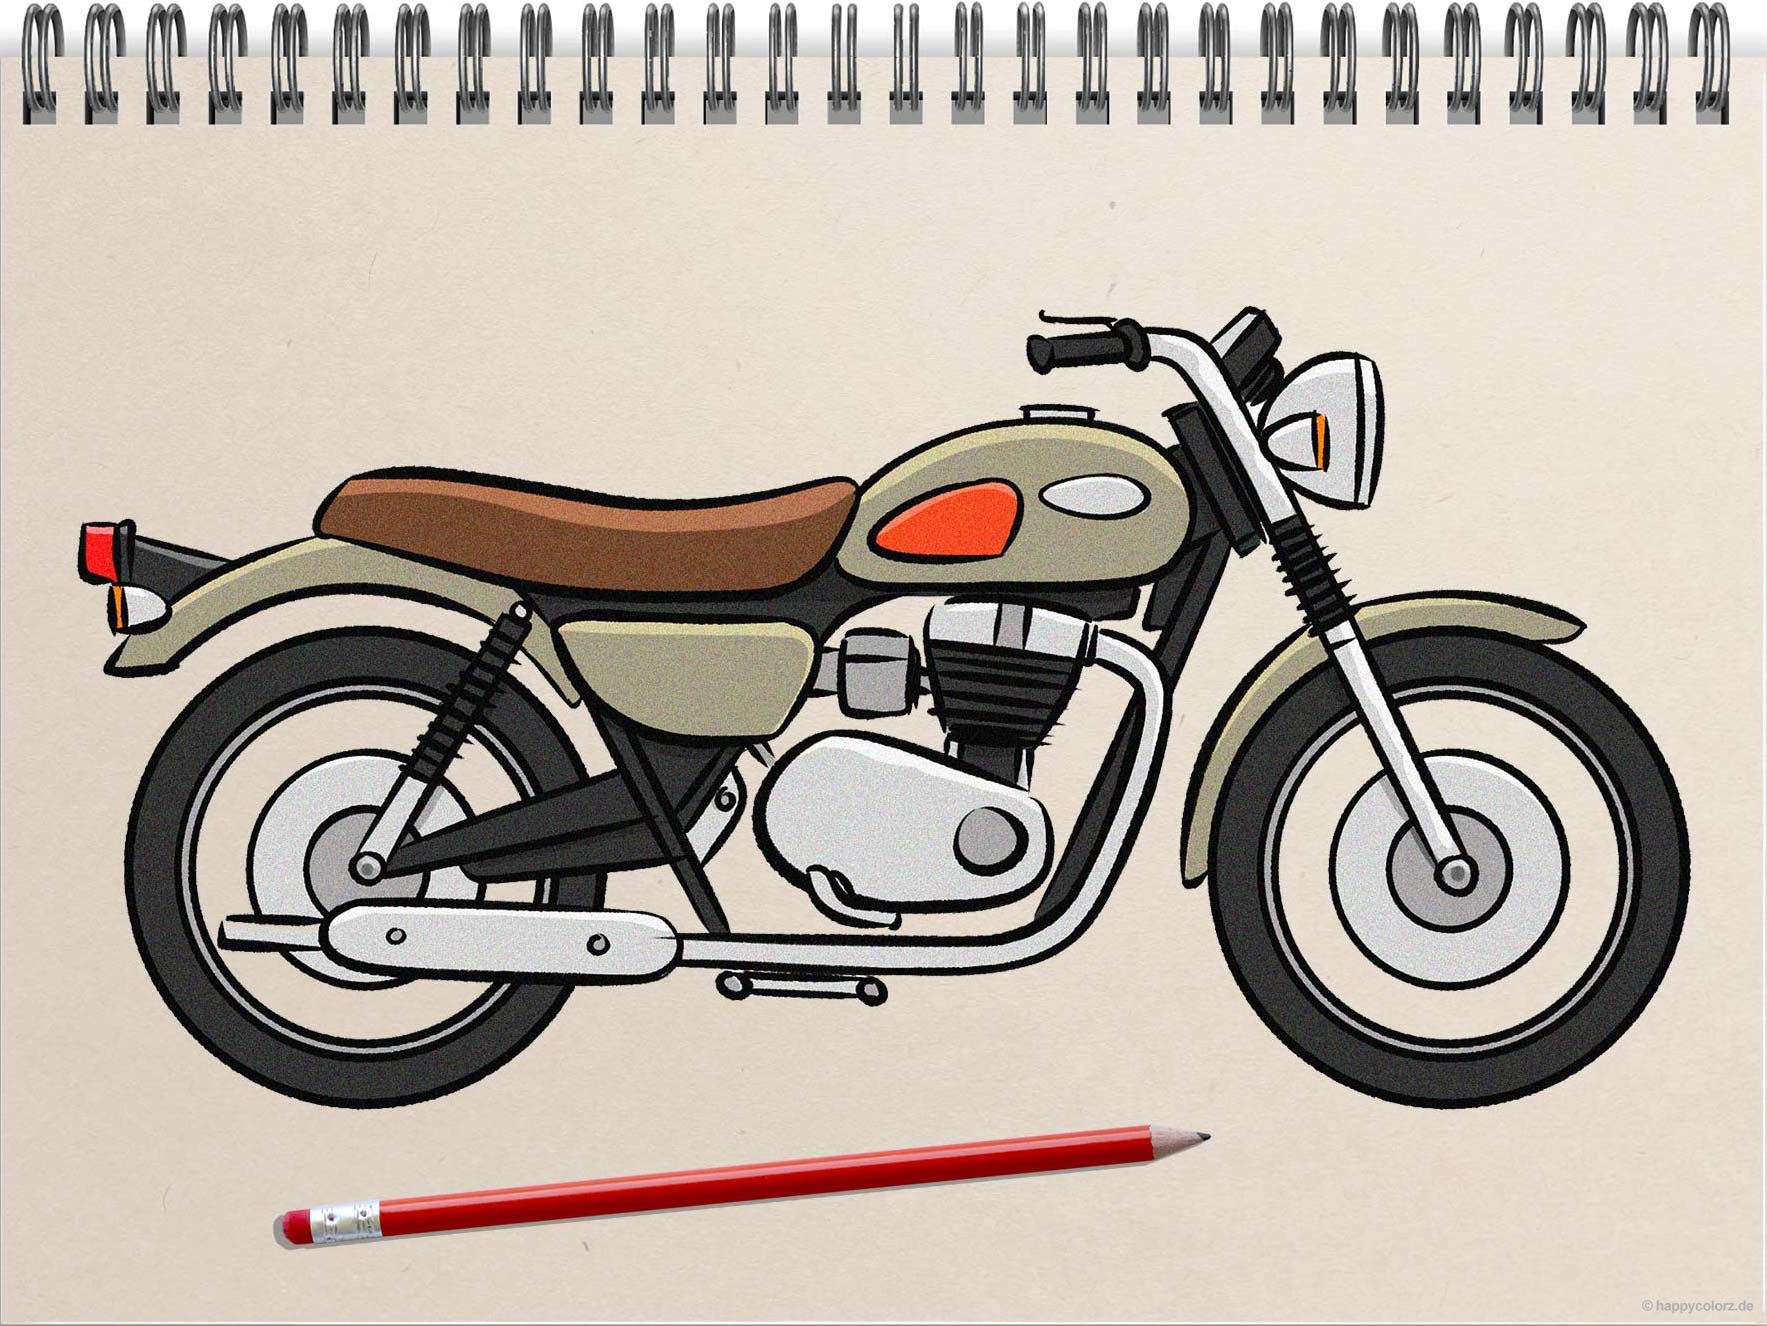 Motorrad zeichnen - Schritt-für-Schritt Anleitung mit Vorlagen